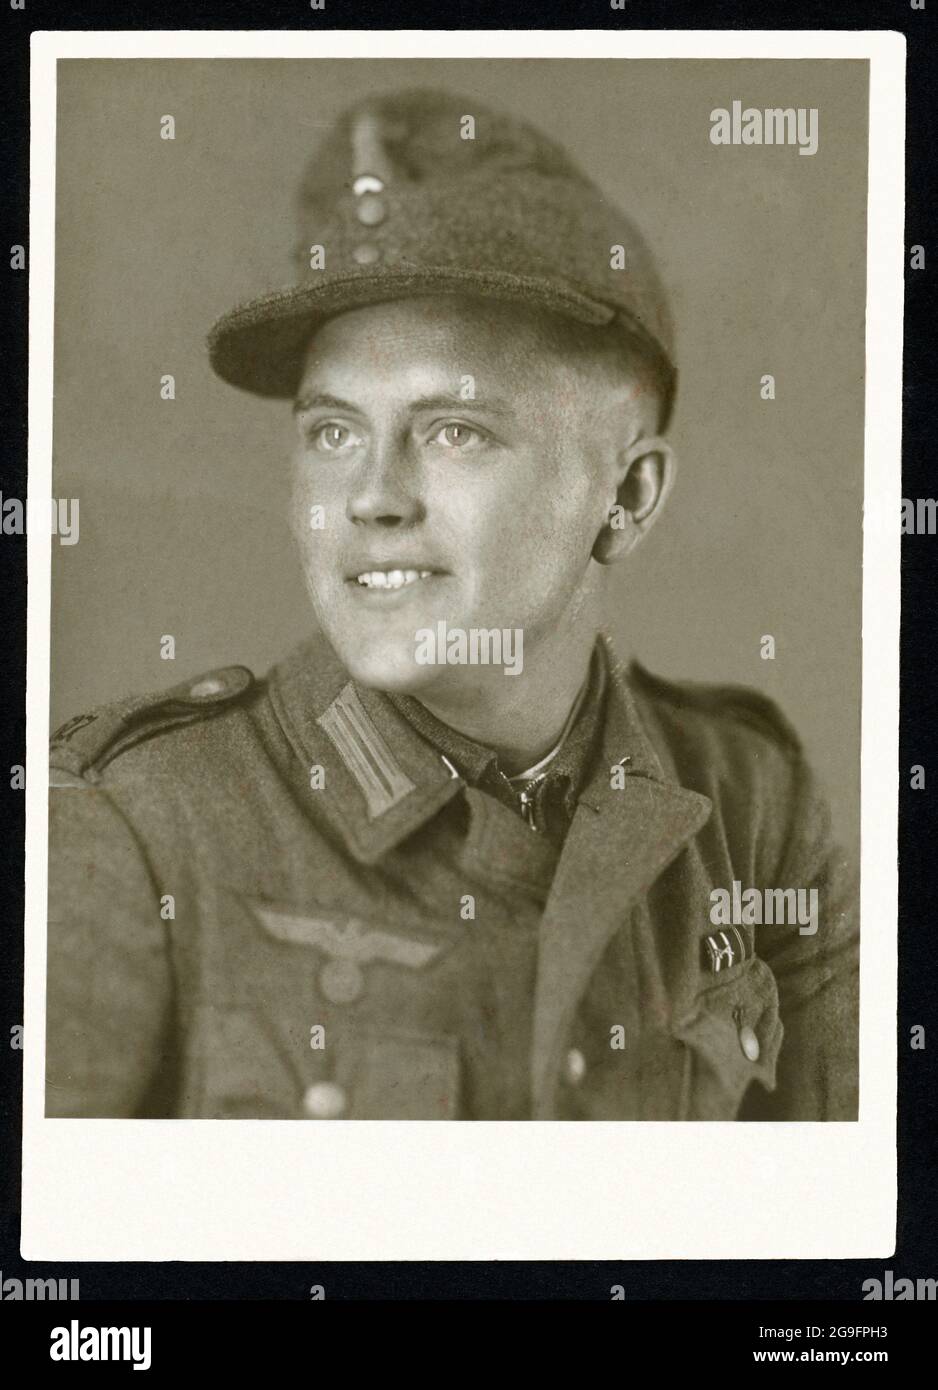 Europa, Alemania, Hamburgo, retrato de un soldado alemán en la Segunda Guerra Mundial, alrededor de 1943 , USO EDITORIAL SOLAMENTE Foto de stock